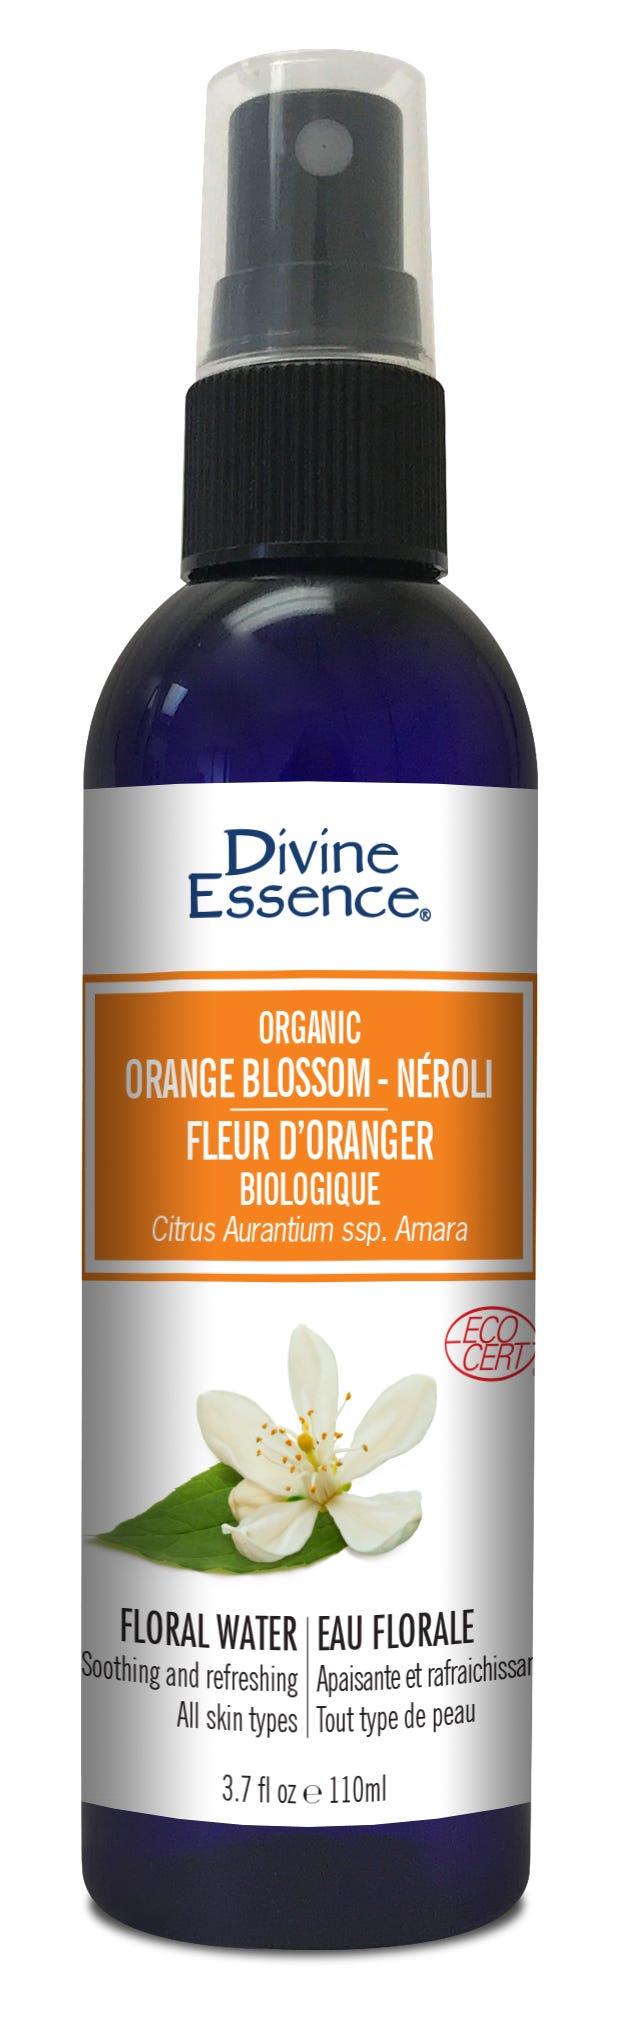 Divine Essence Orange Blossom Neroli 110ml